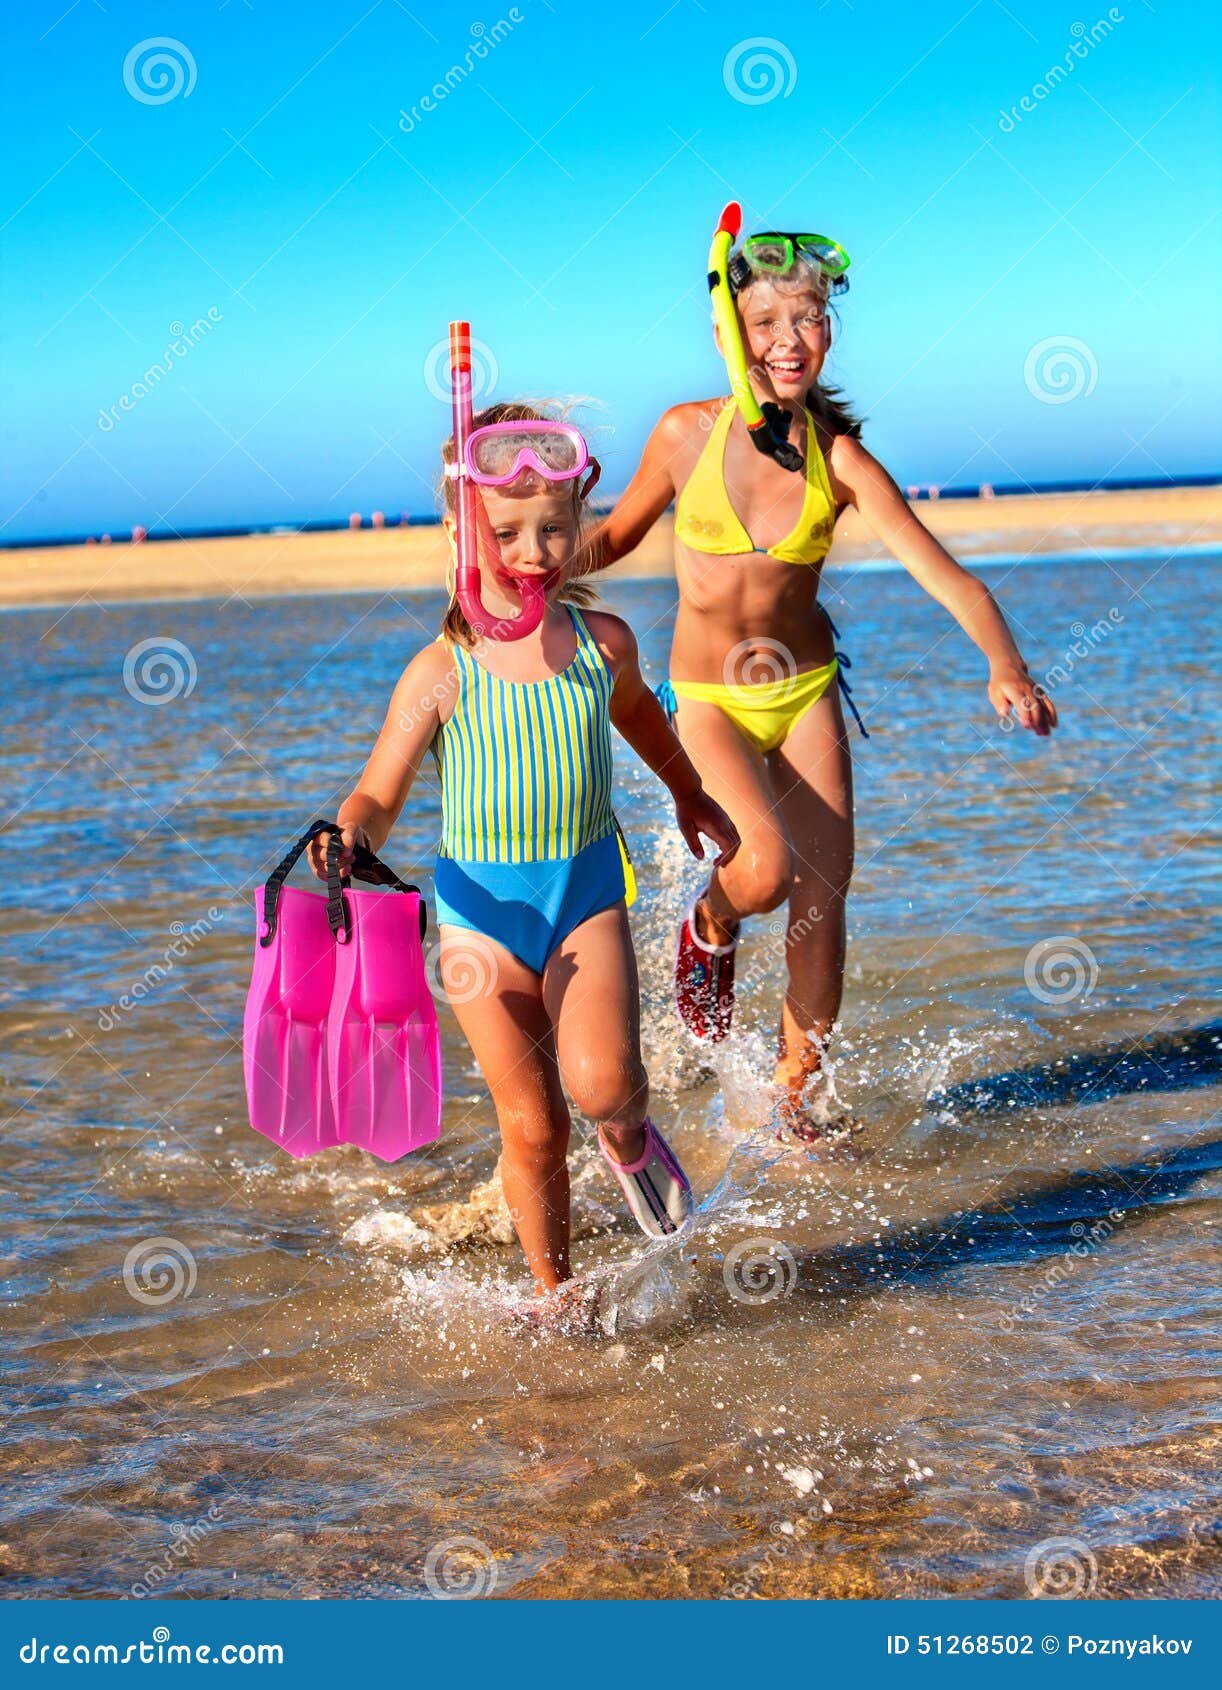 фото детей на голом пляже фото 81